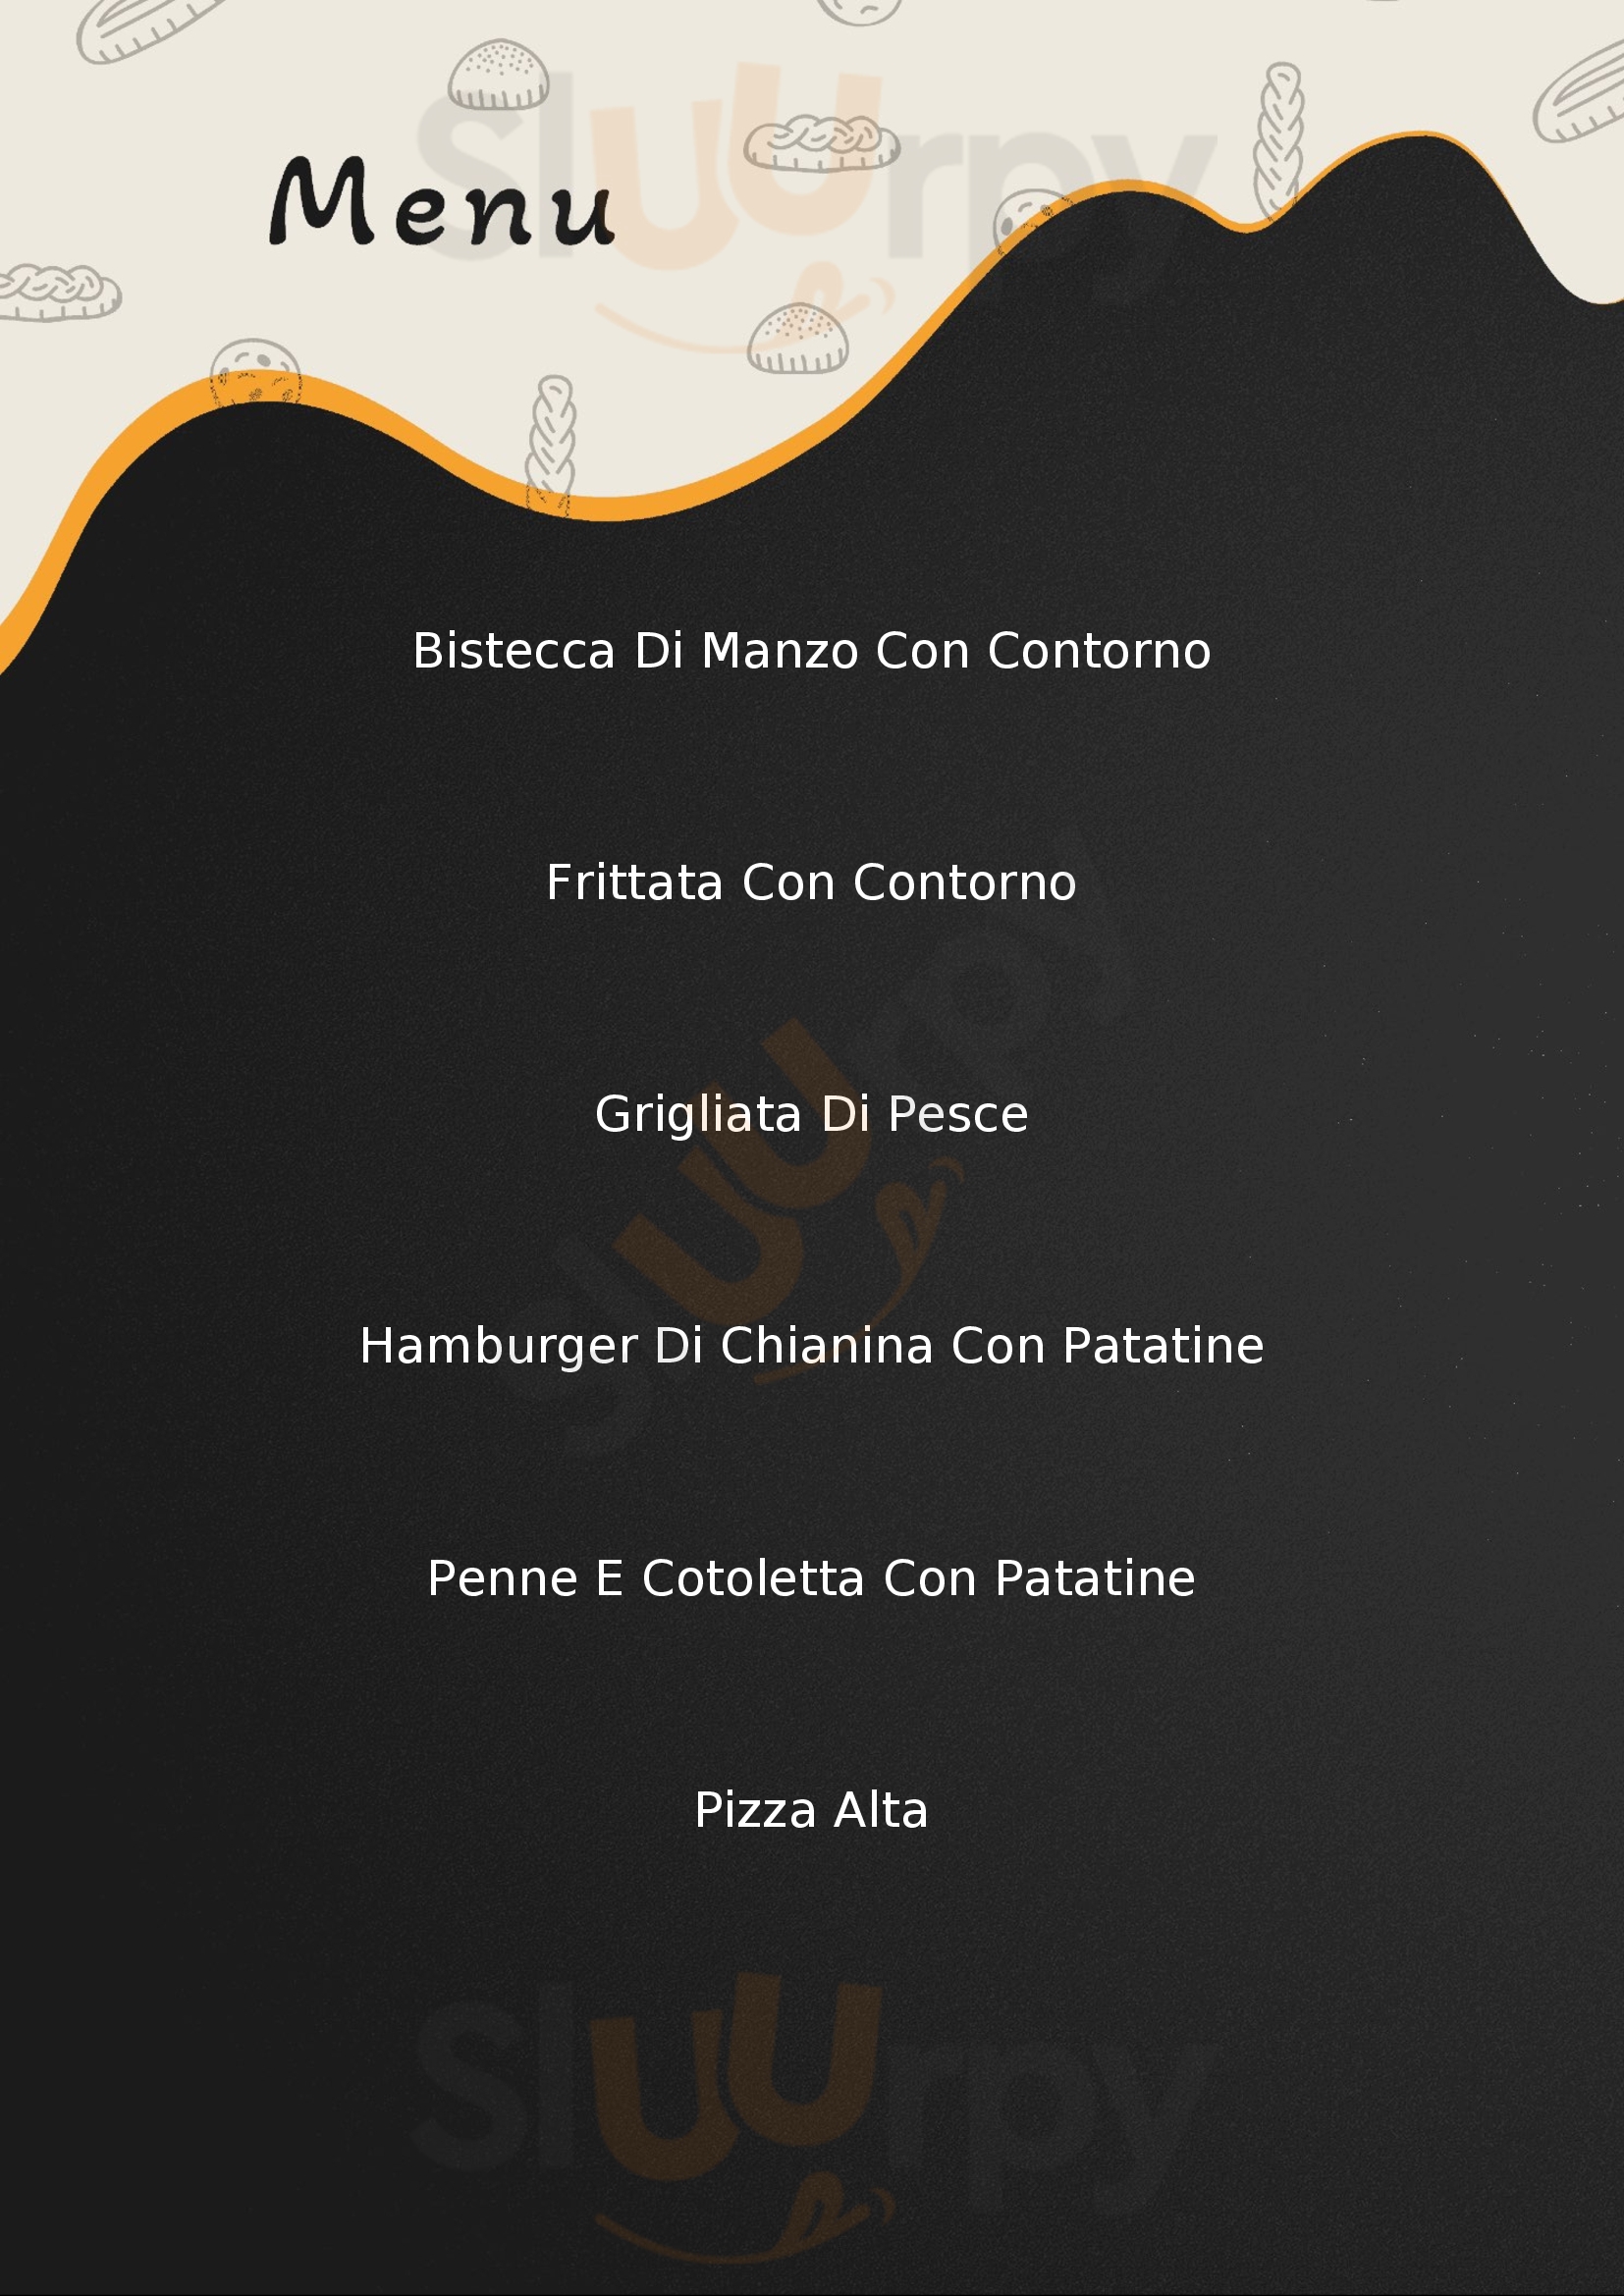 Paolo & Friends - Self Service RIstorante Pizzeria Fiorano Modenese menù 1 pagina